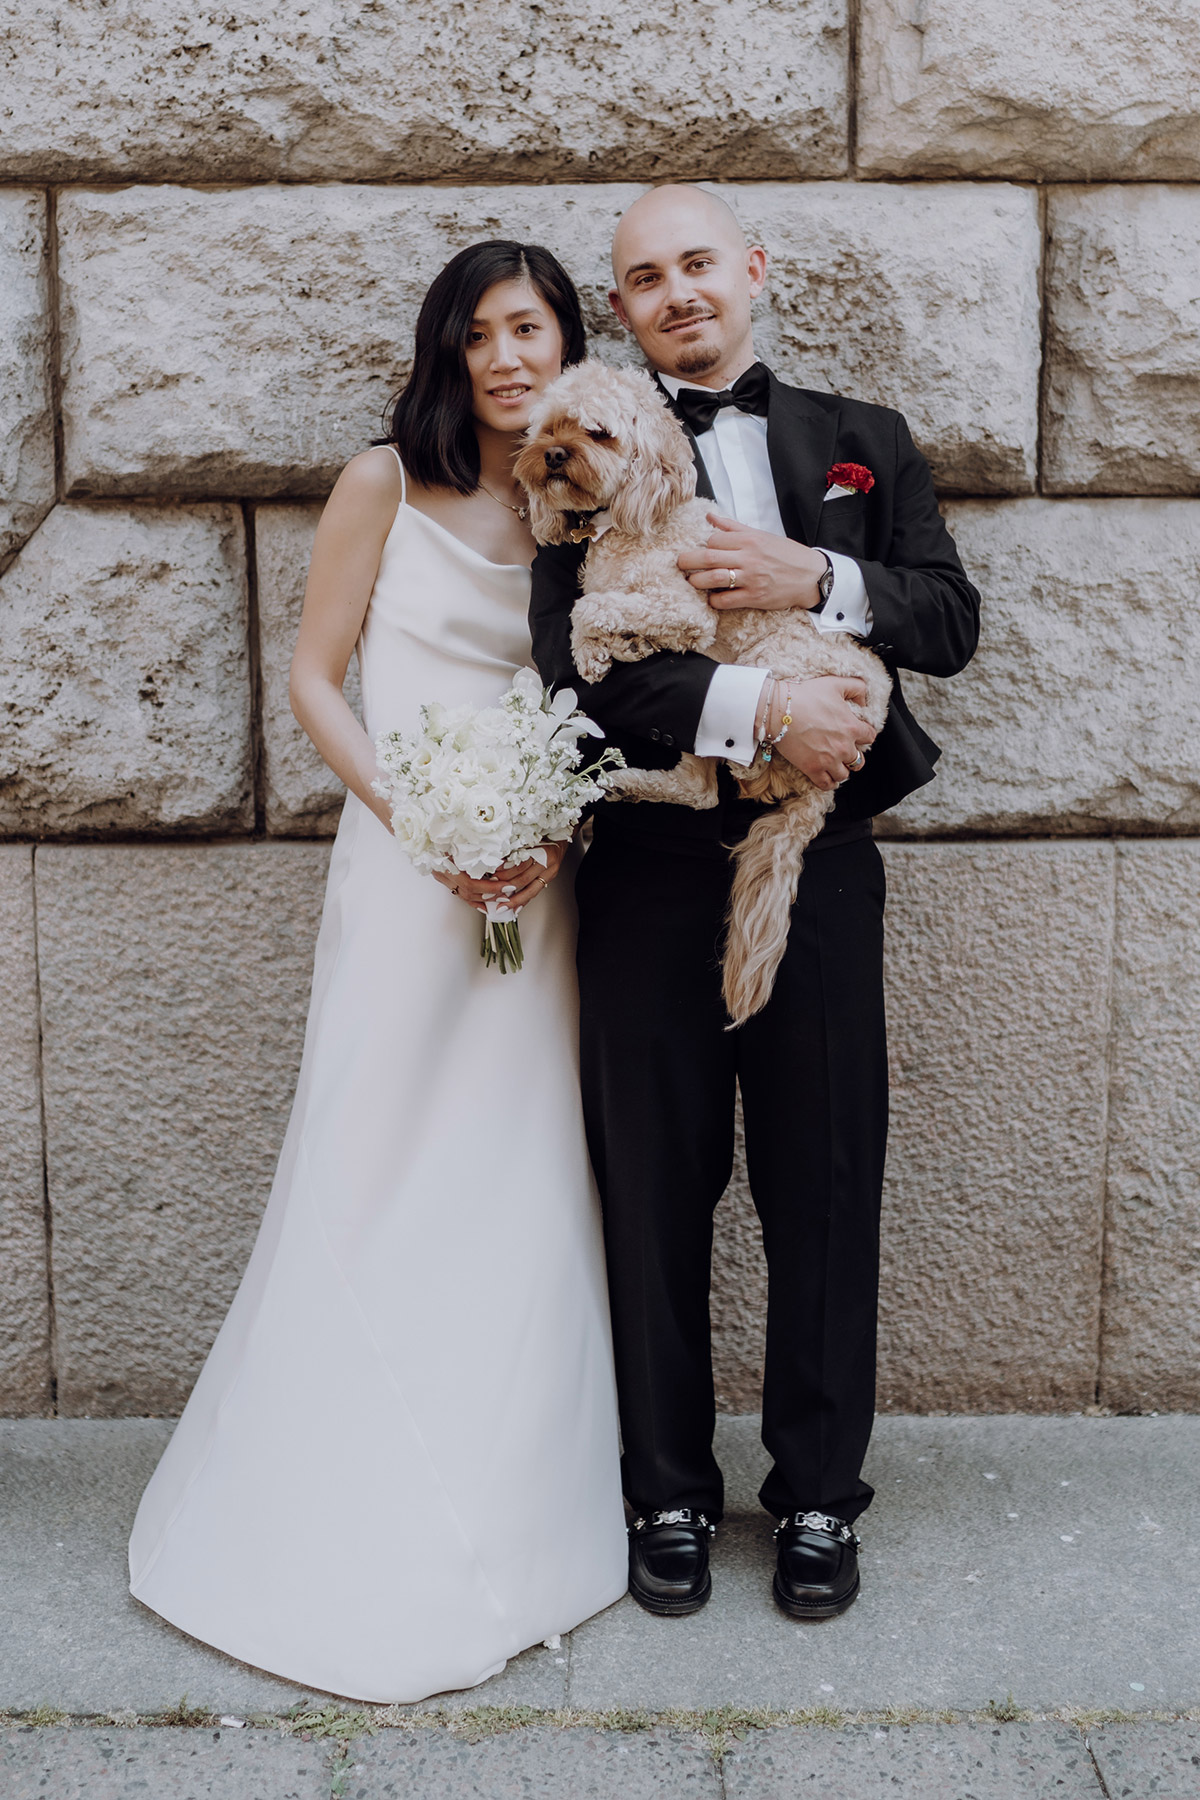 Heiraten mit Hund: Idee für Hochzeitsfoto von Brautpaar mit Hund bei echter Hochzeit mit Hochzeitsfotografin Berlin. MEHR HOCHZEITSFOTOS IM BLOG. © www.hochzeitslicht.de #hochzeitslicht